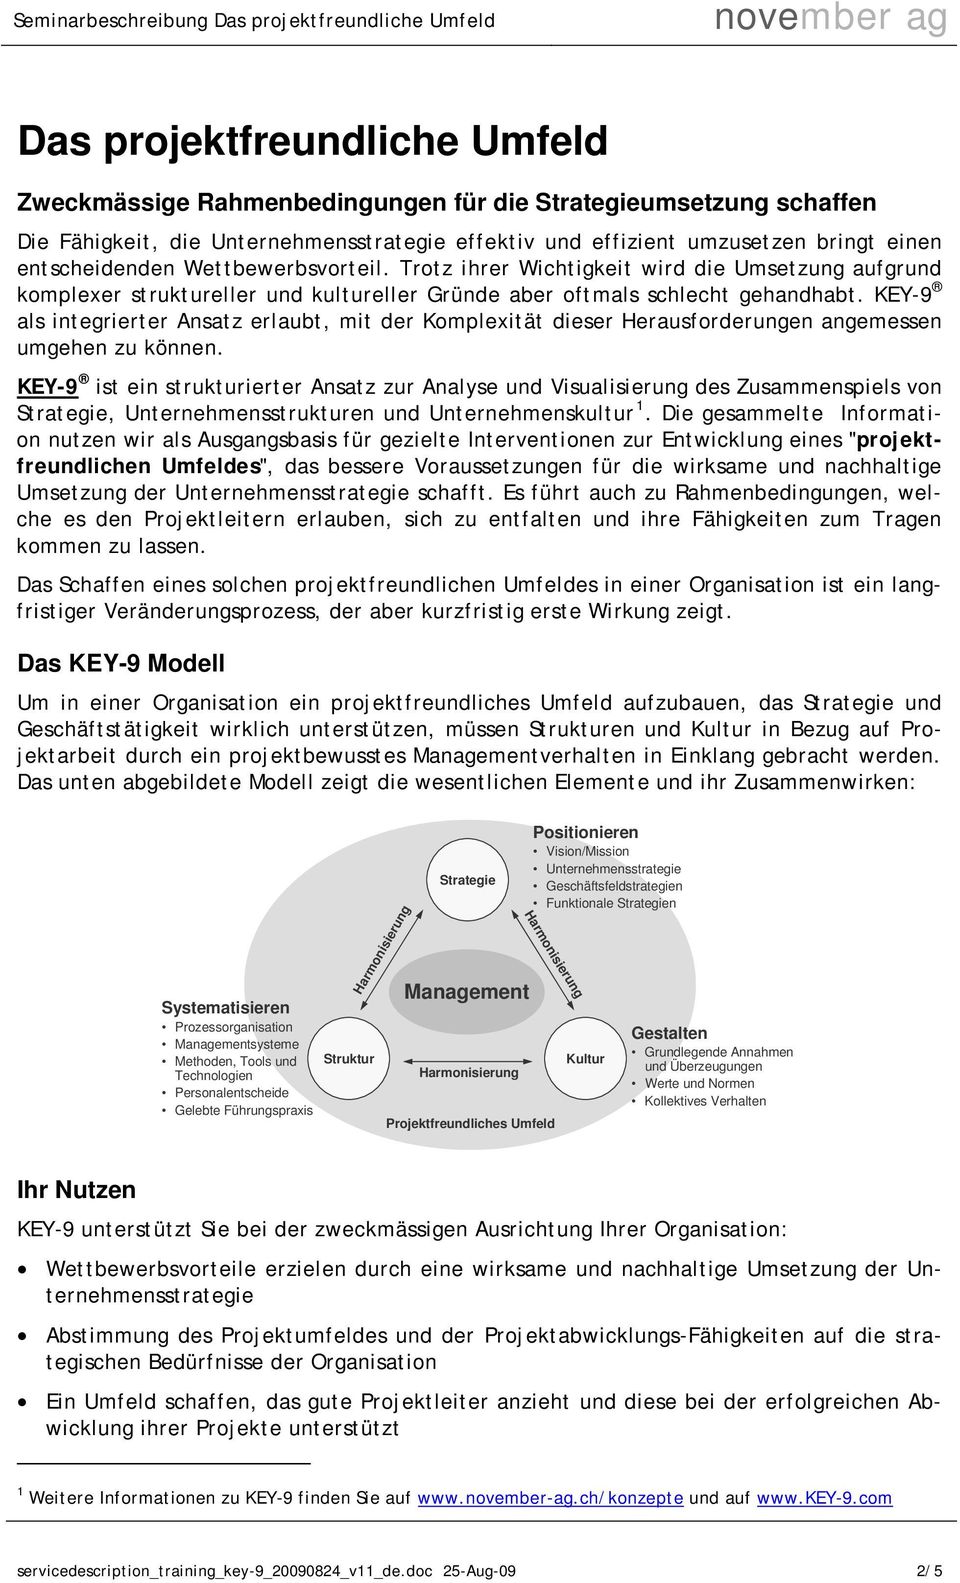 KEY-9 als integrierter Ansatz erlaubt, mit der Komplexität dieser Herausforderungen angemessen umgehen zu können.